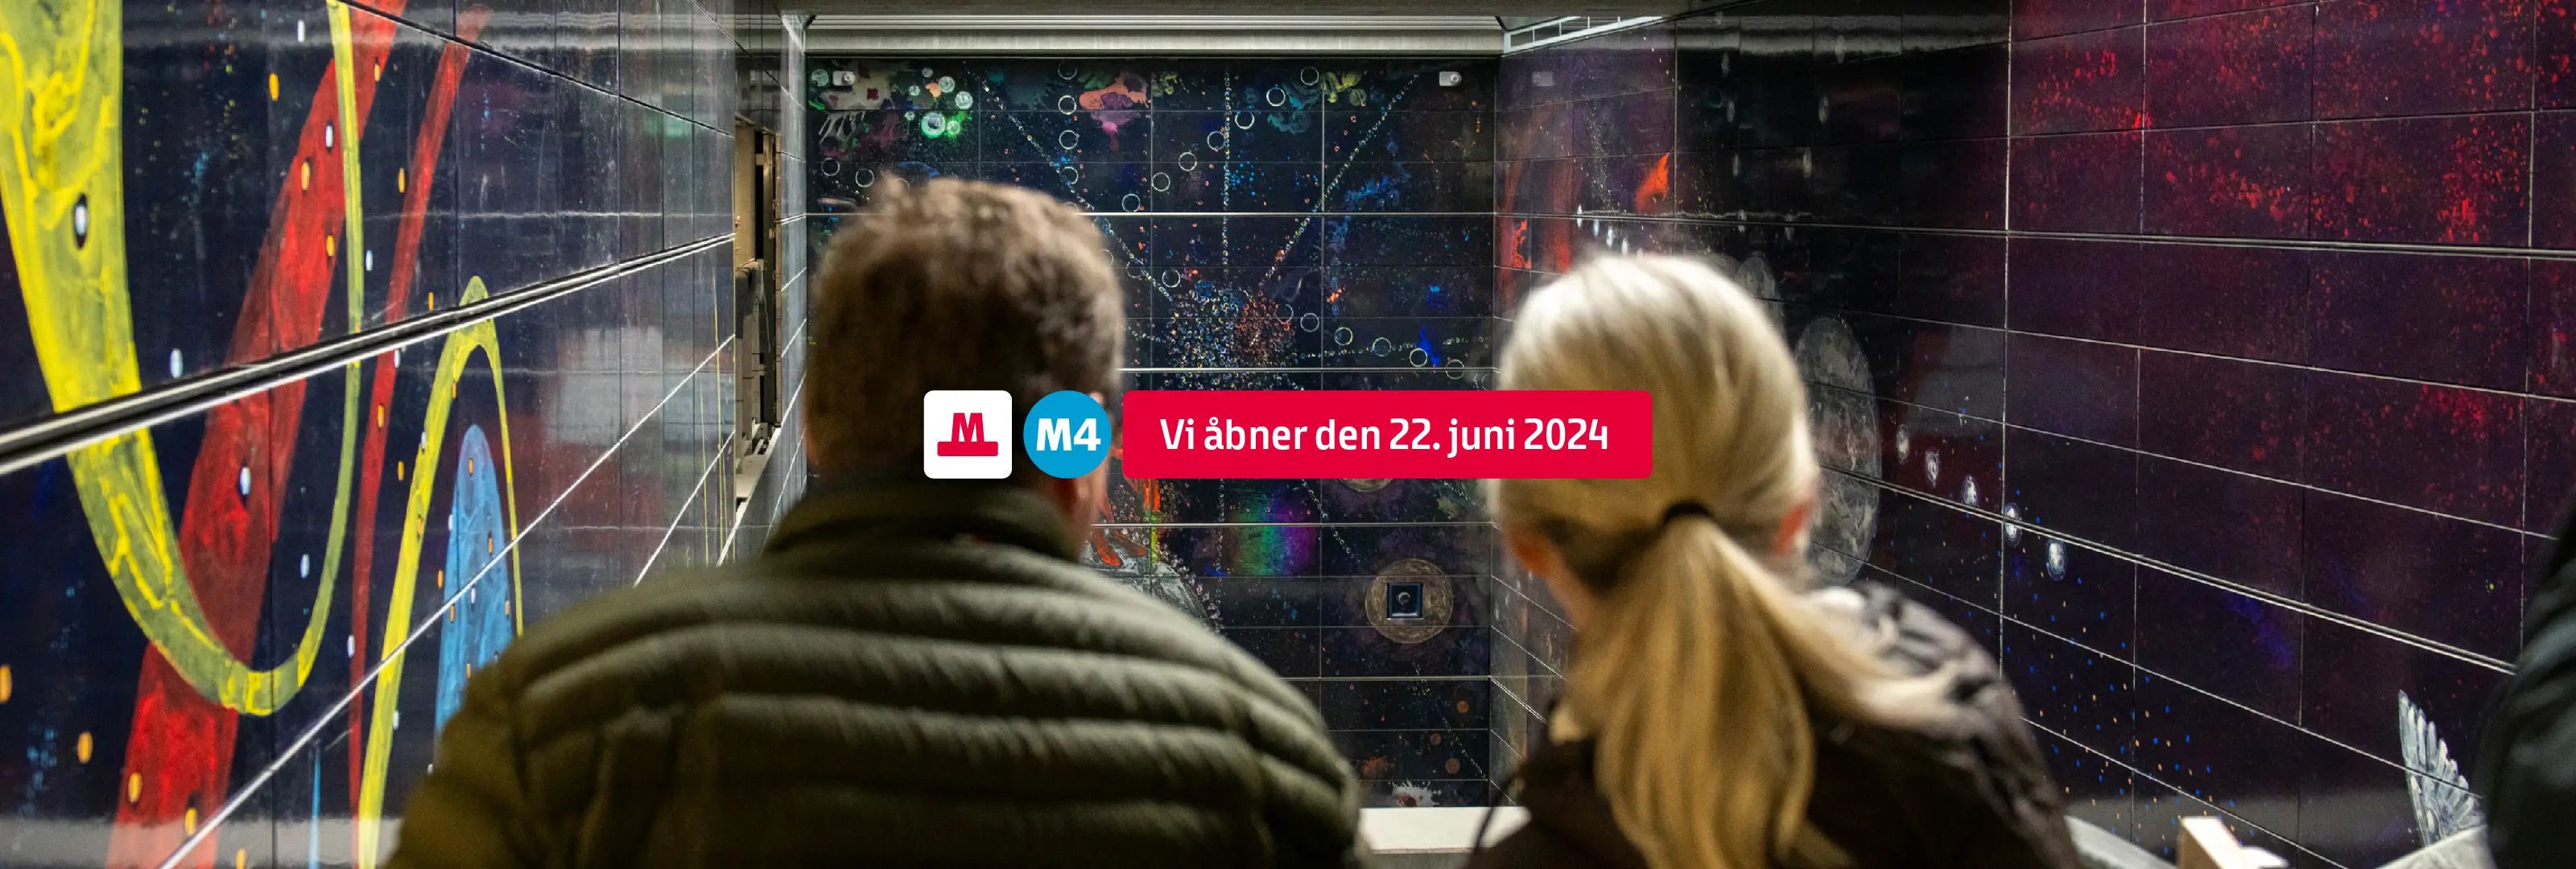 Metrolinjen M4 til Sydhavn og Valby åbner d. 22. juni